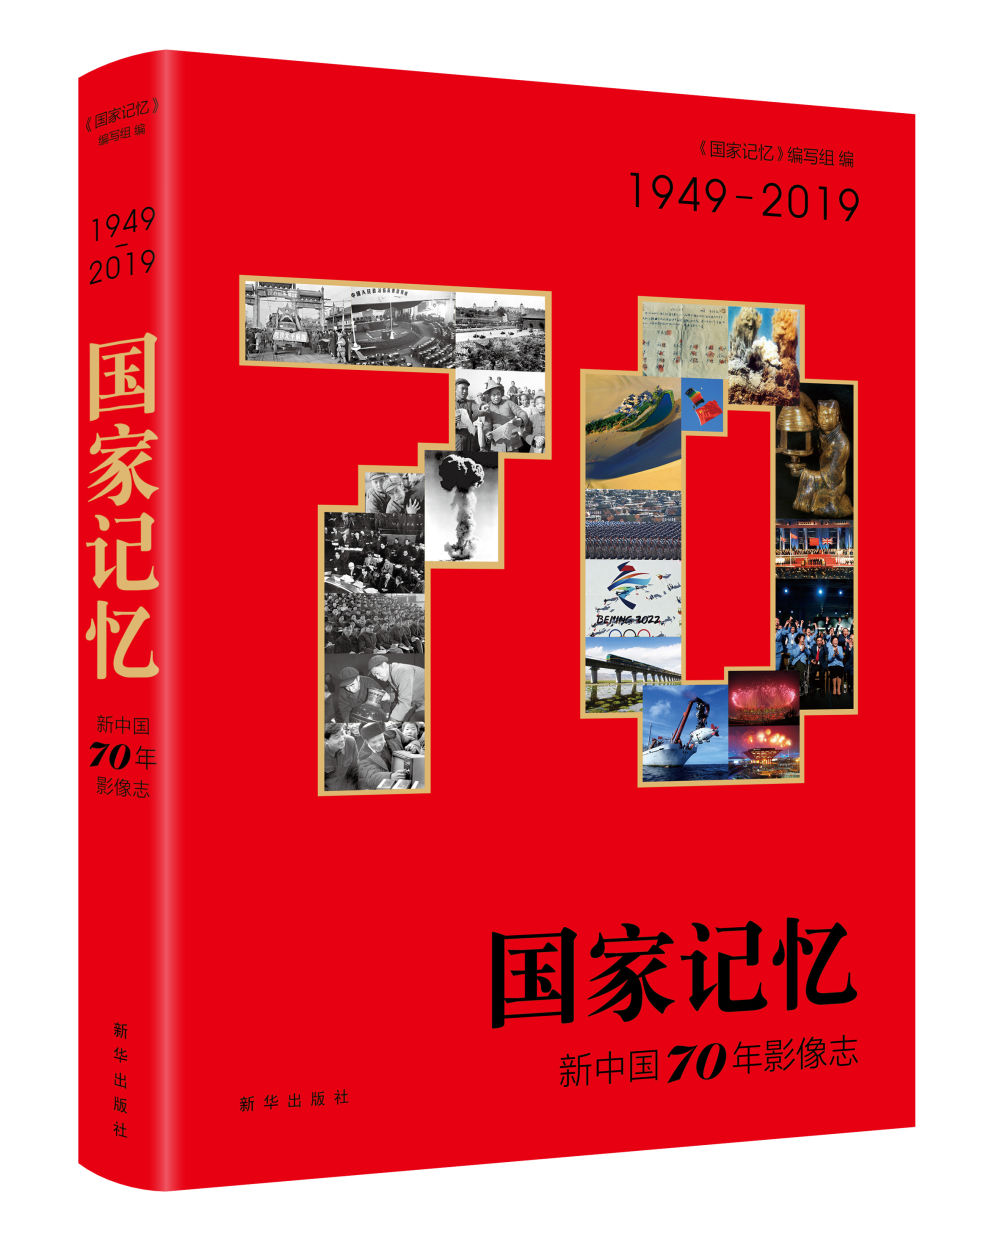 新华社民族品牌工程13家入选企业案例入编 《国家记忆：新中国70年影像志》